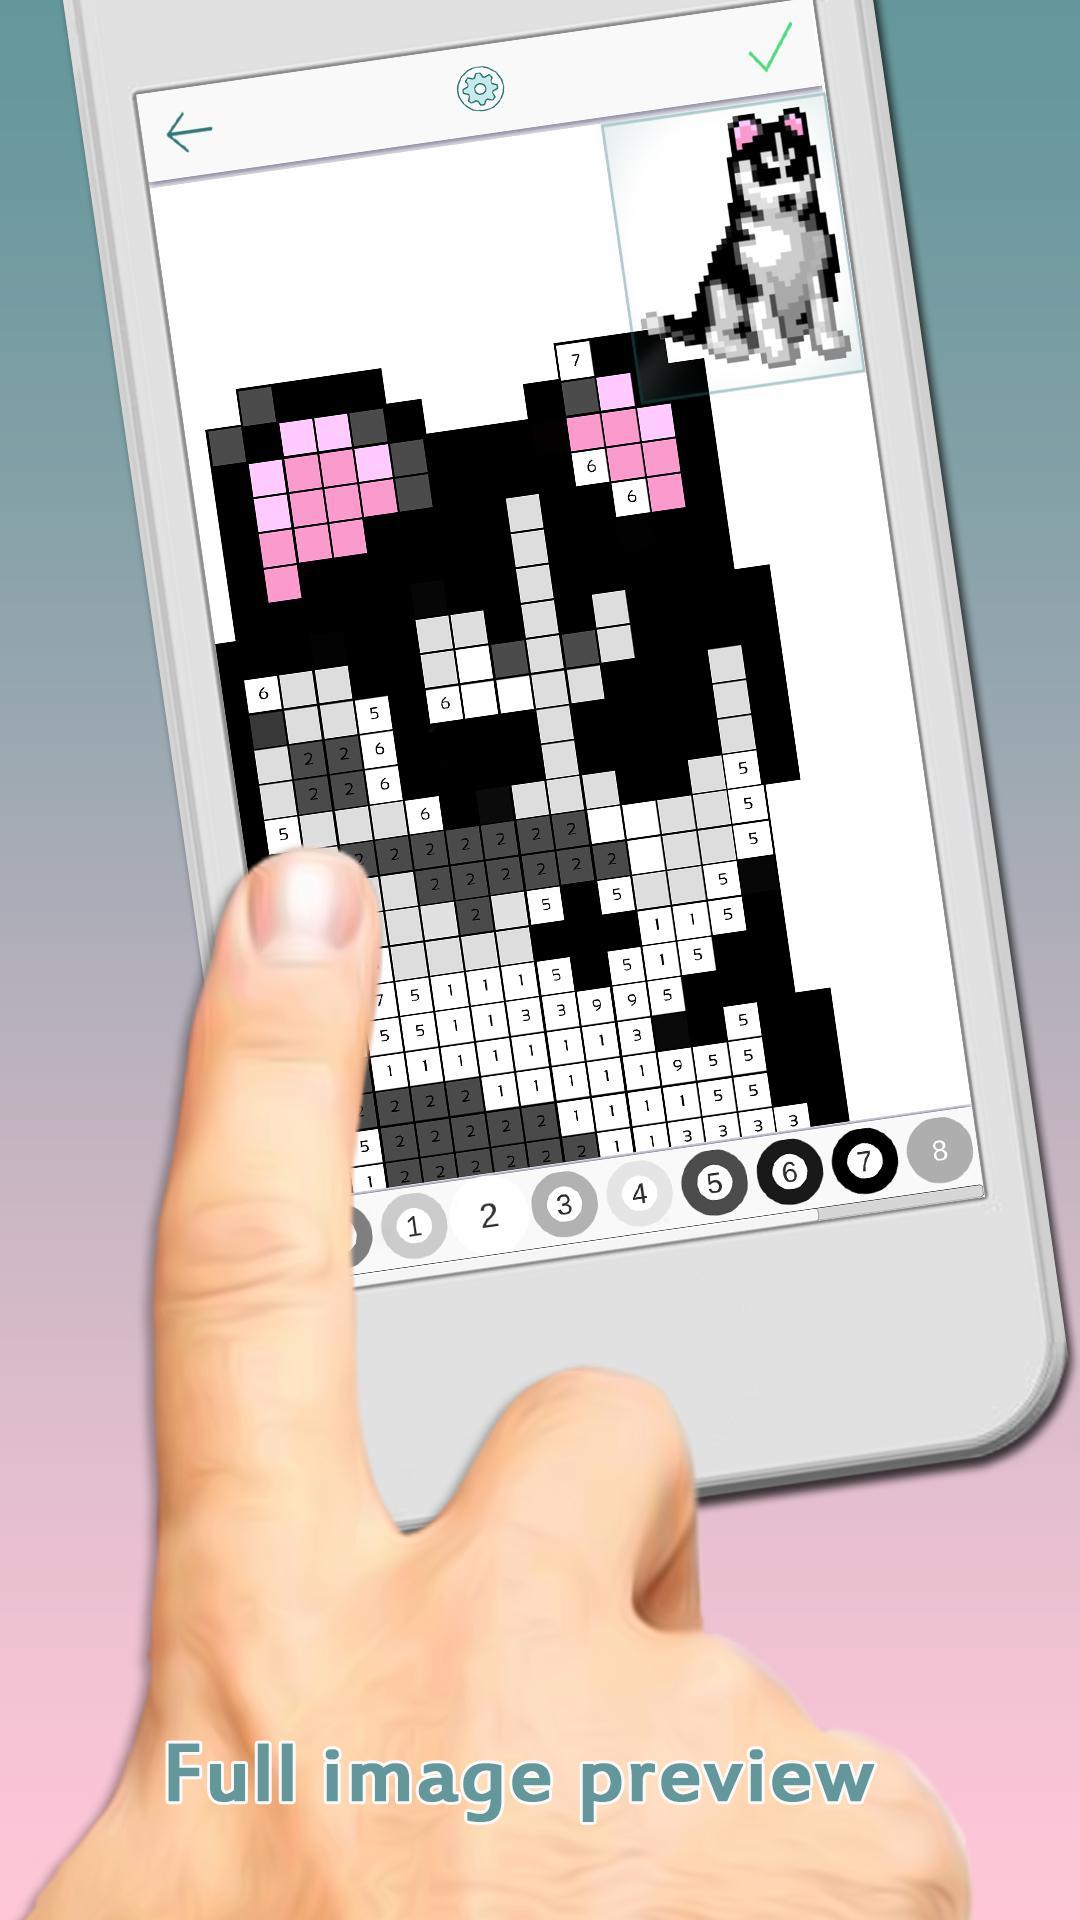 Pixel Art Sayilarla Boyama Kitabi 2 1 2 Apk Indir Android Icin Ucretsiz Bulmaca Oyunu Apkara Com